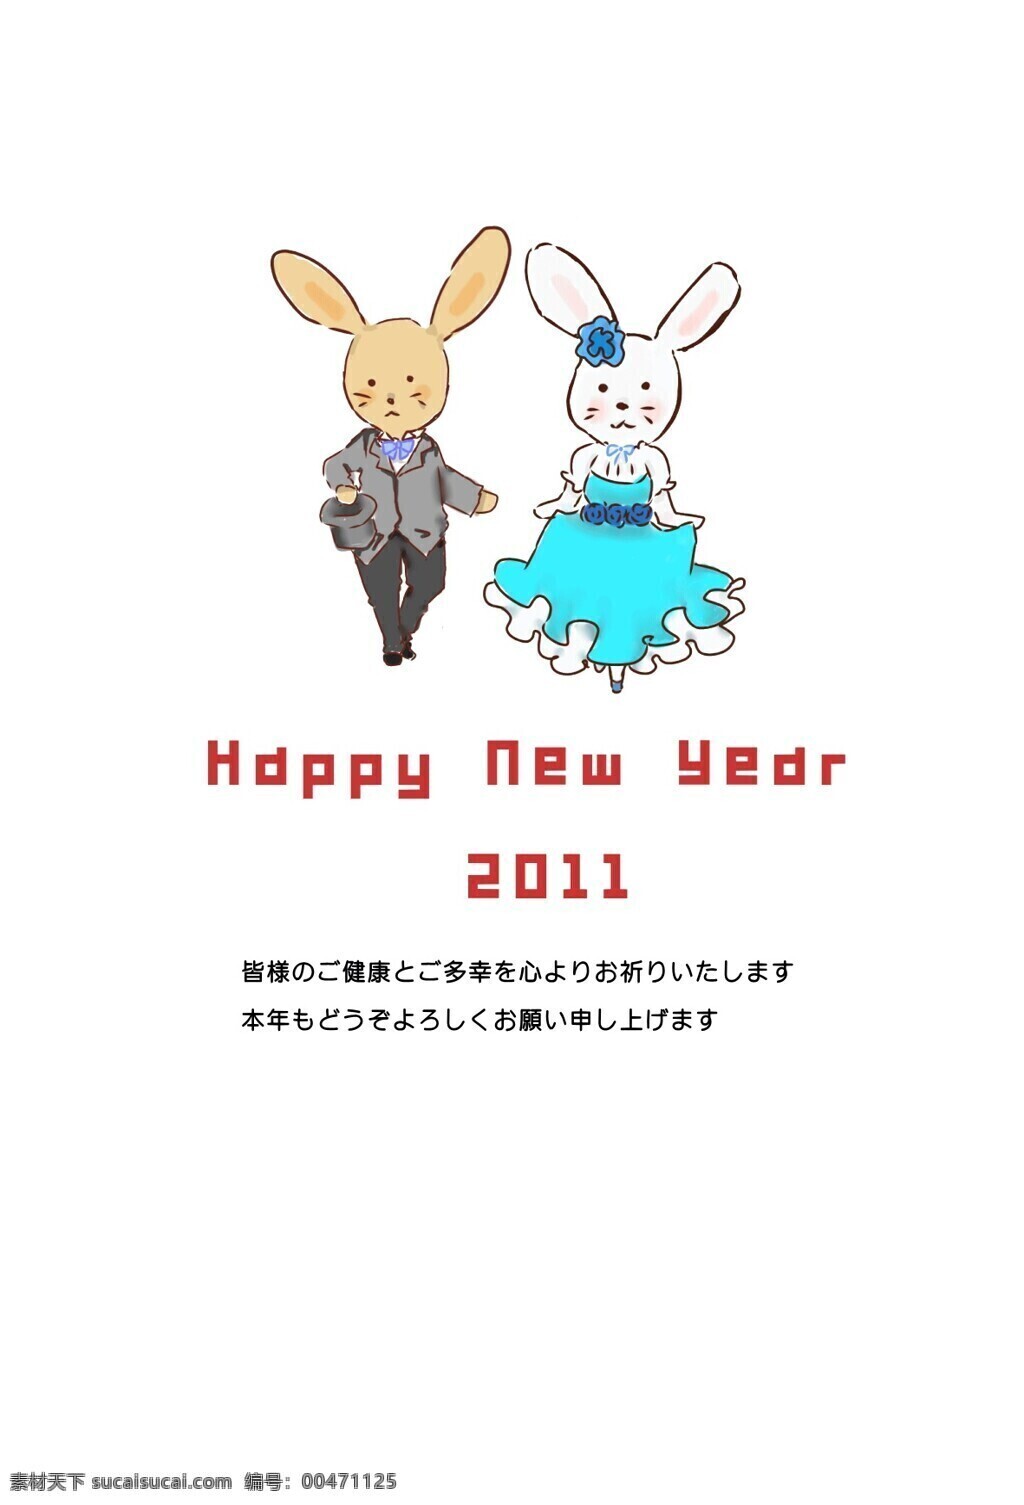 动漫动画 过年 贺卡 可爱 日本 日本风格 2011 年 兔年 2011年 小兔子 新年 节日素材 2015 元旦 春节 元宵